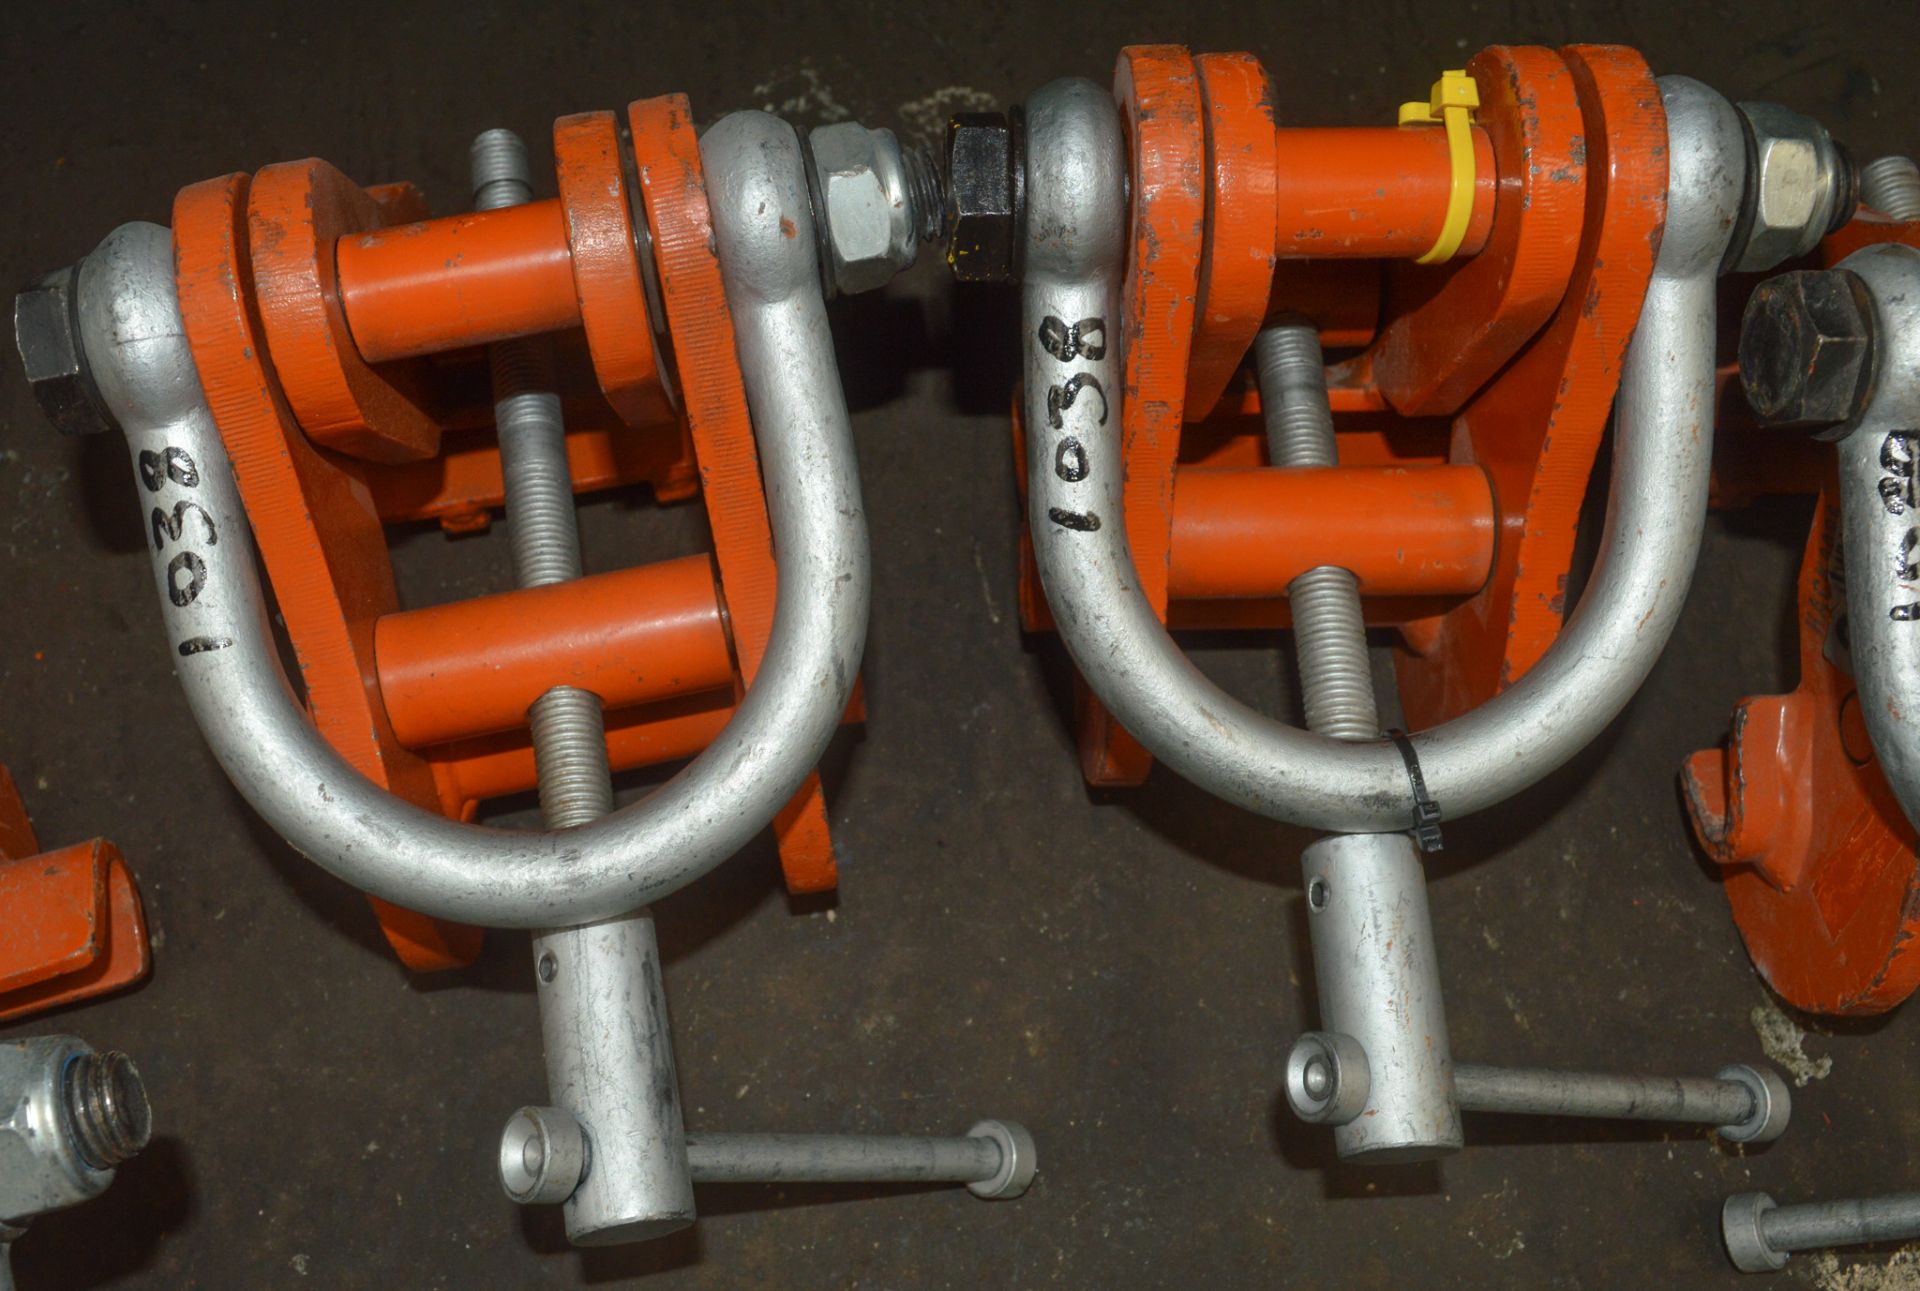 2 - Girder clamps